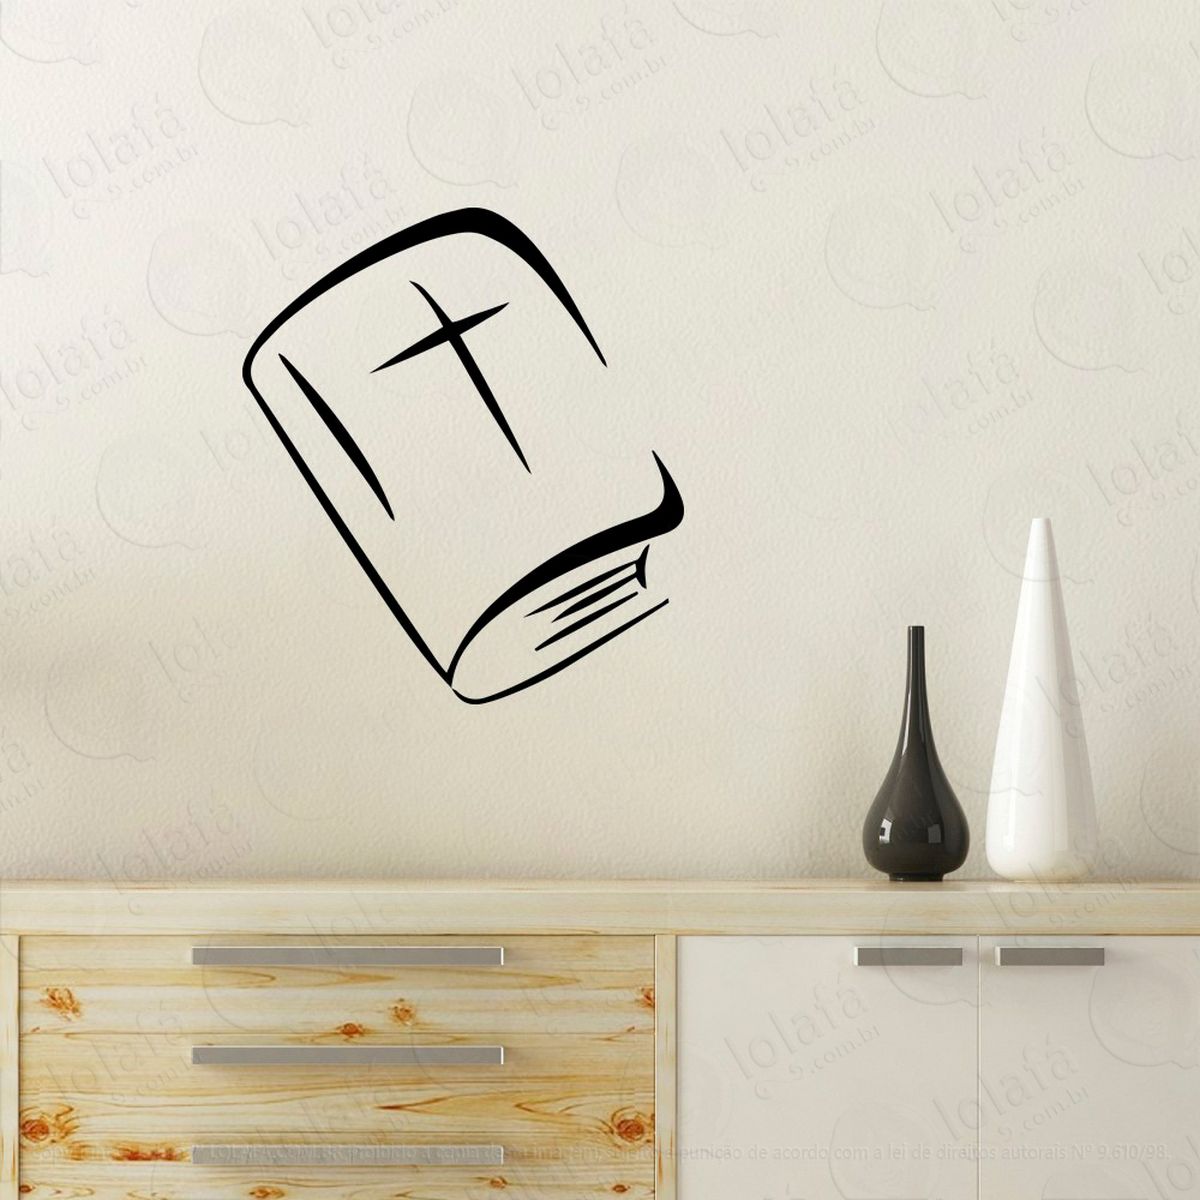 bíblia sagrada adesivo de parede decorativo para casa, quarto, sala e vidro - mod:75